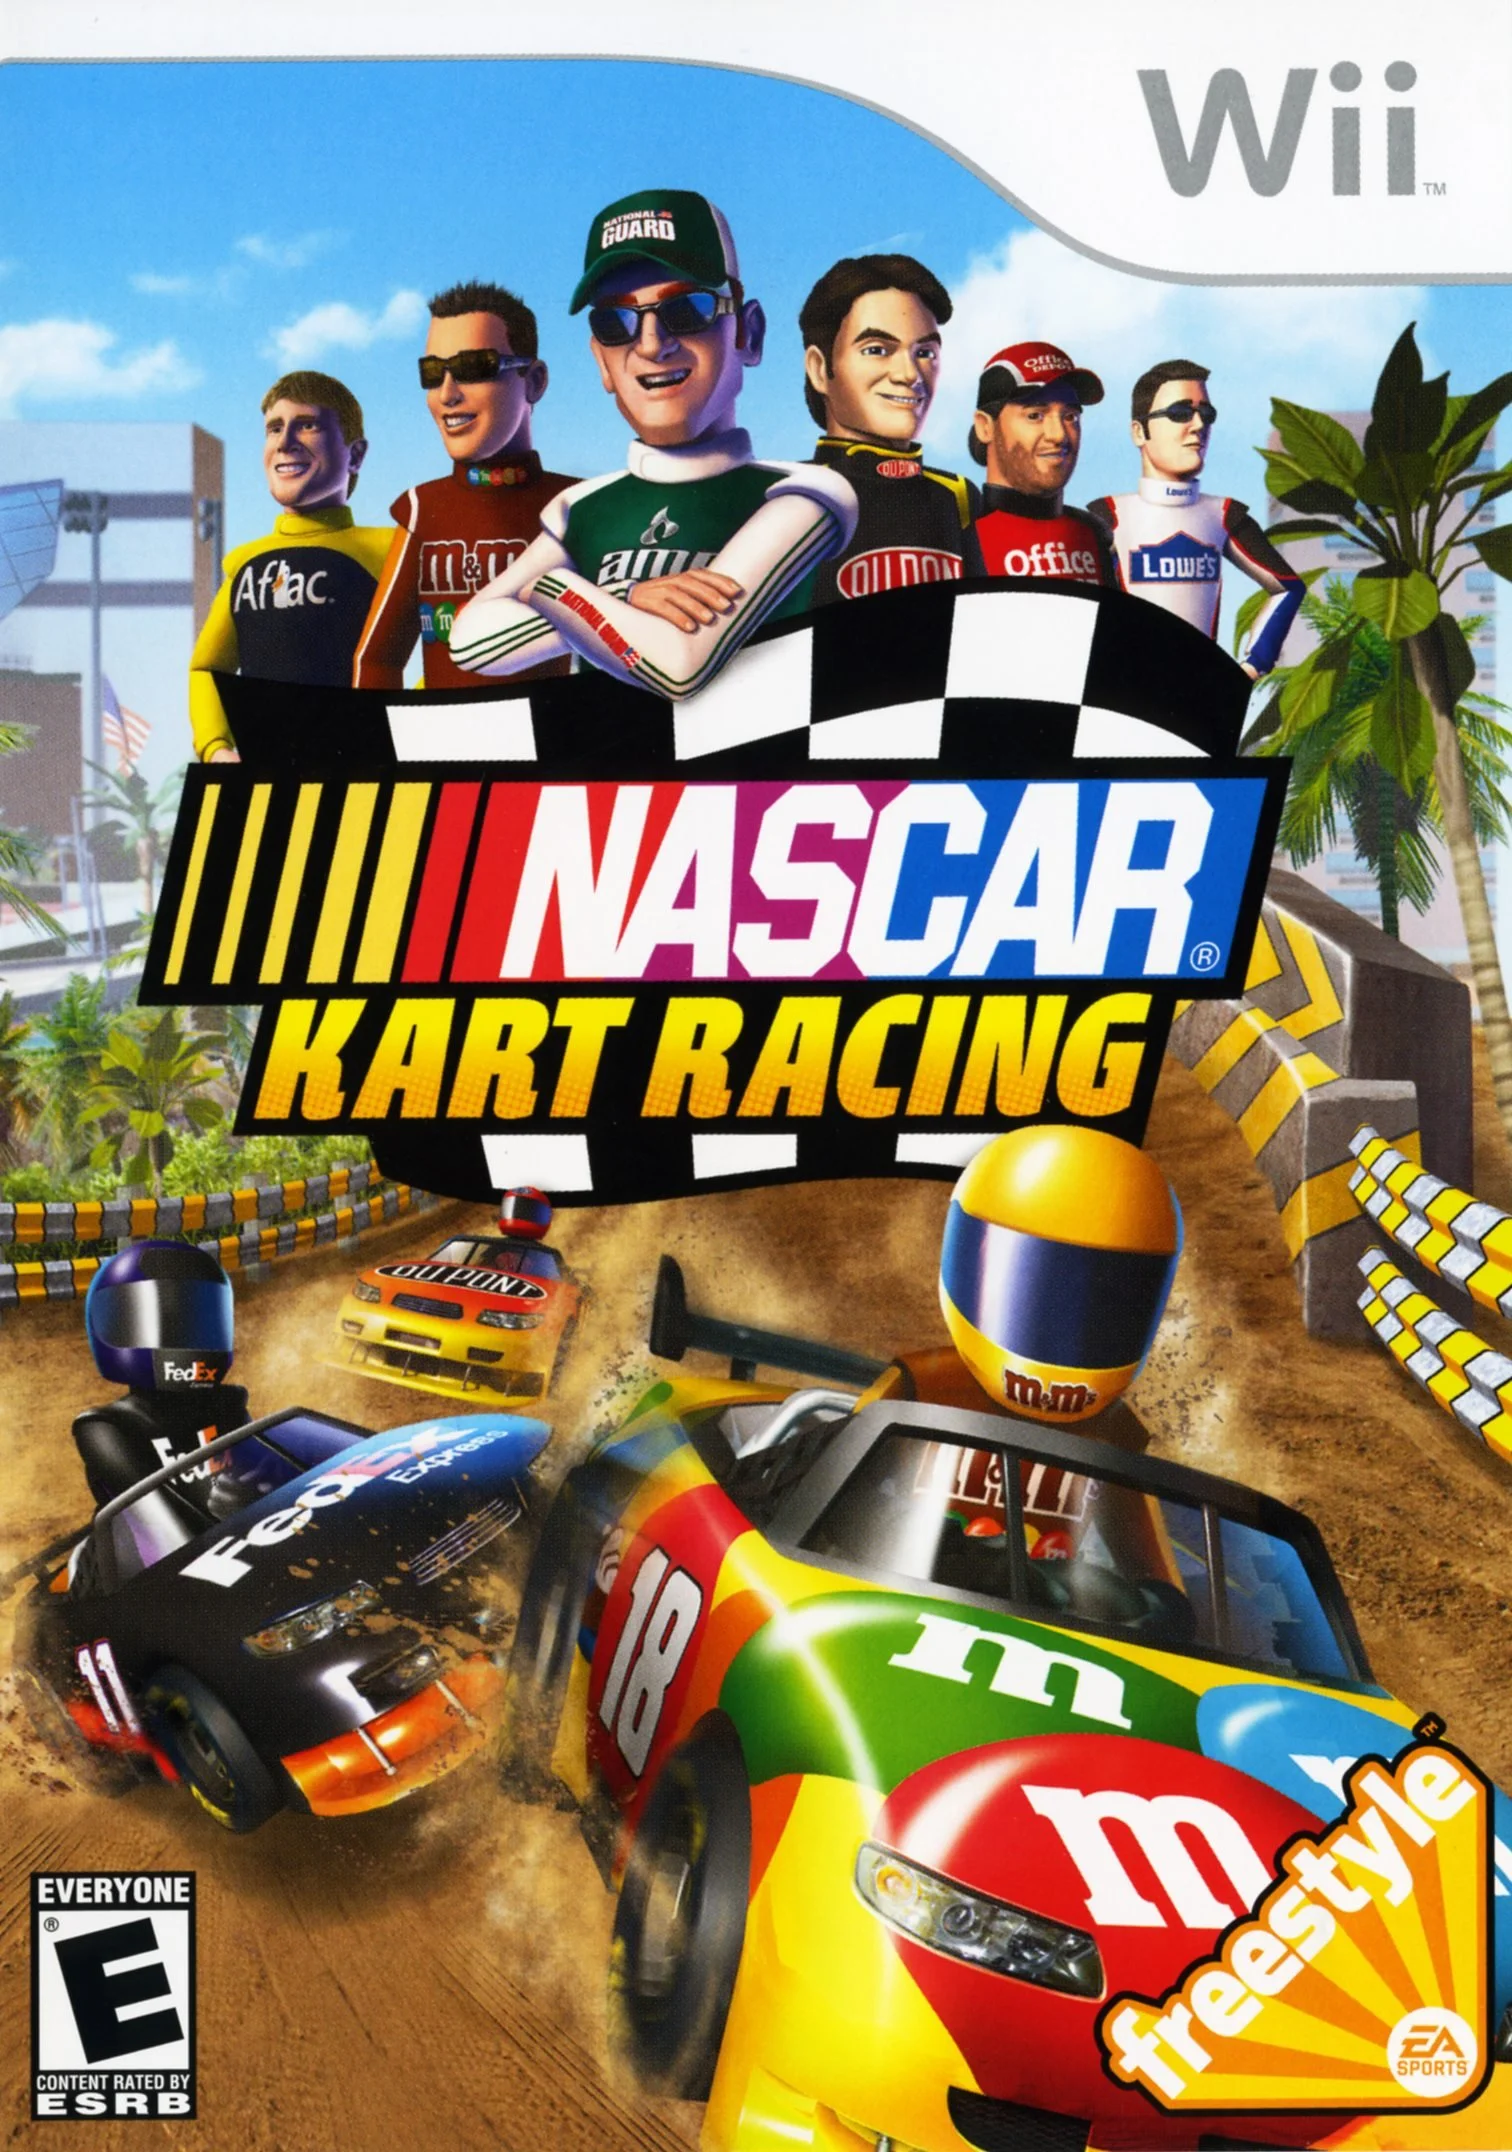 NASCAR Kart Racing